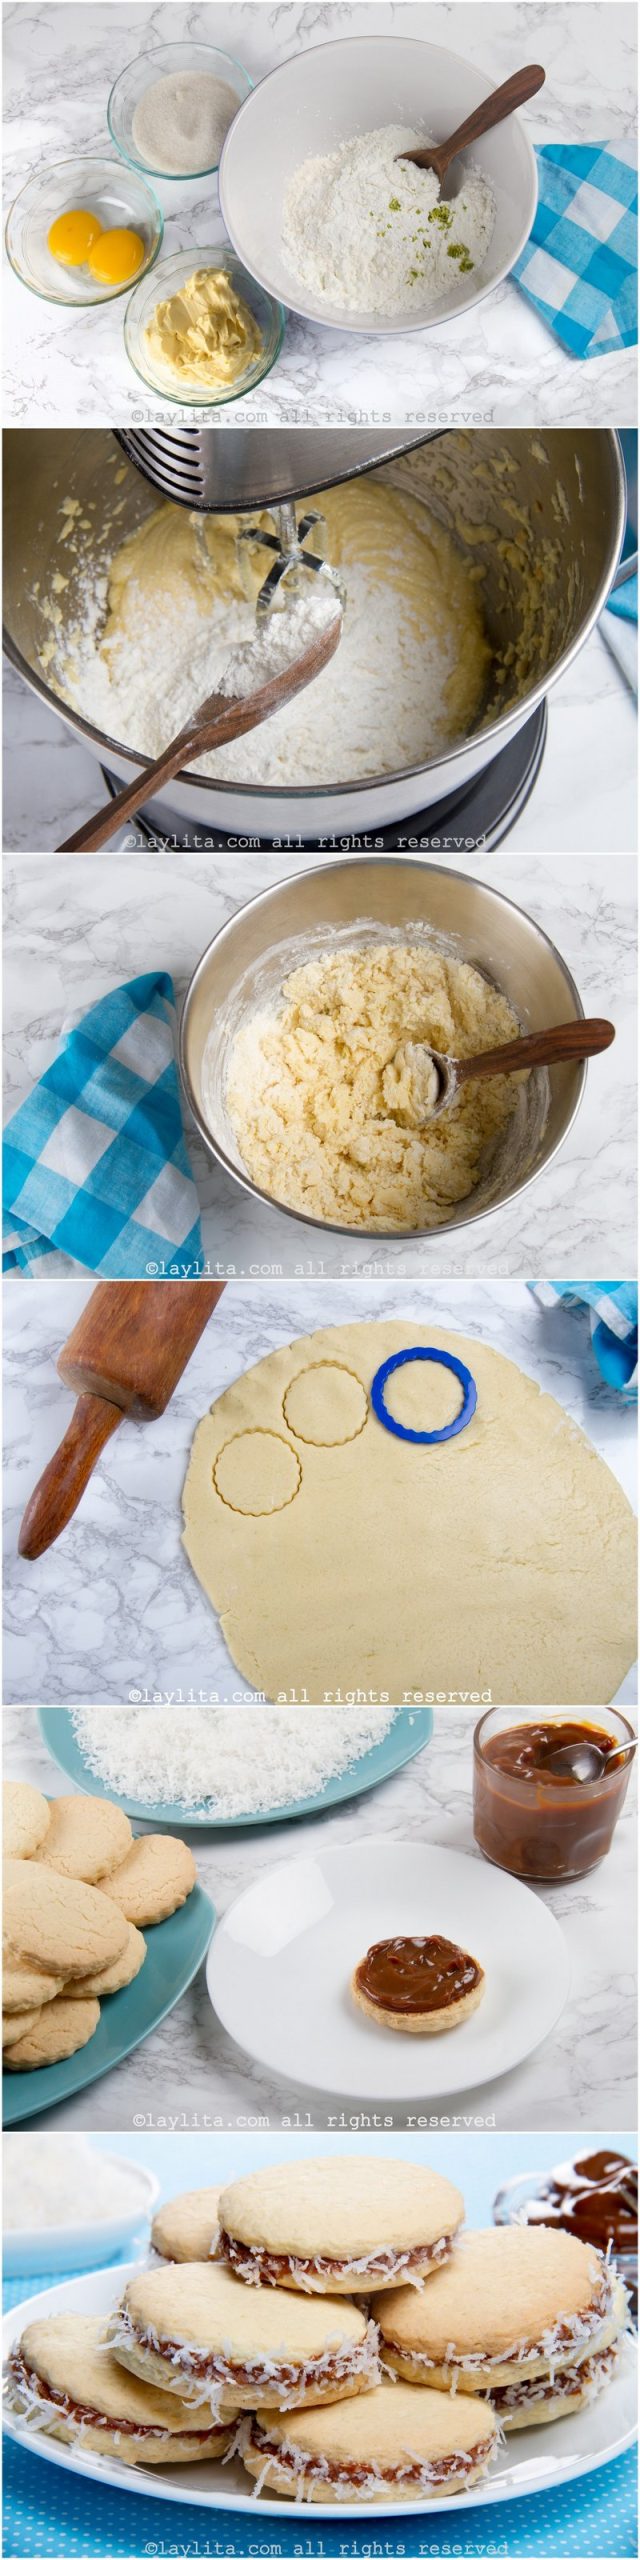 Fotos do passo a passo da preparação dos alfajores ou biscoitos recheados de doce de leite